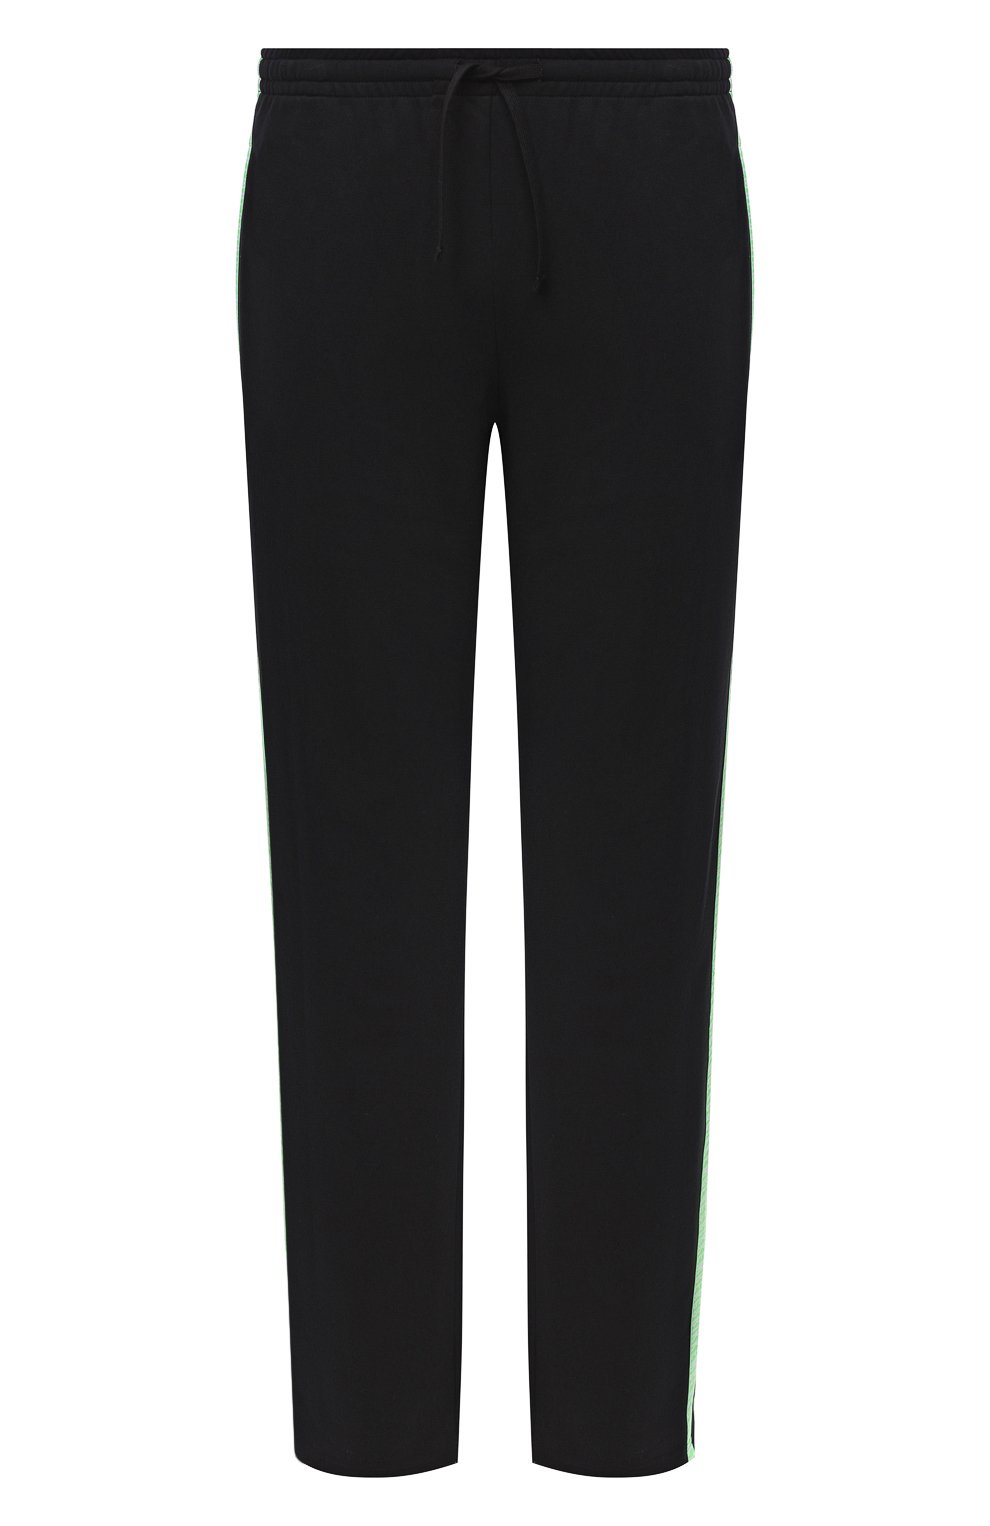 Мужские хлопковые брюки DIRK BIKKEMBERGS черного цвета, арт. VBKT04856 | Фото 1 (Длина (брюки, джинсы): Стандартные; Случай: Повседневный; Материал внешний: Хлопок)